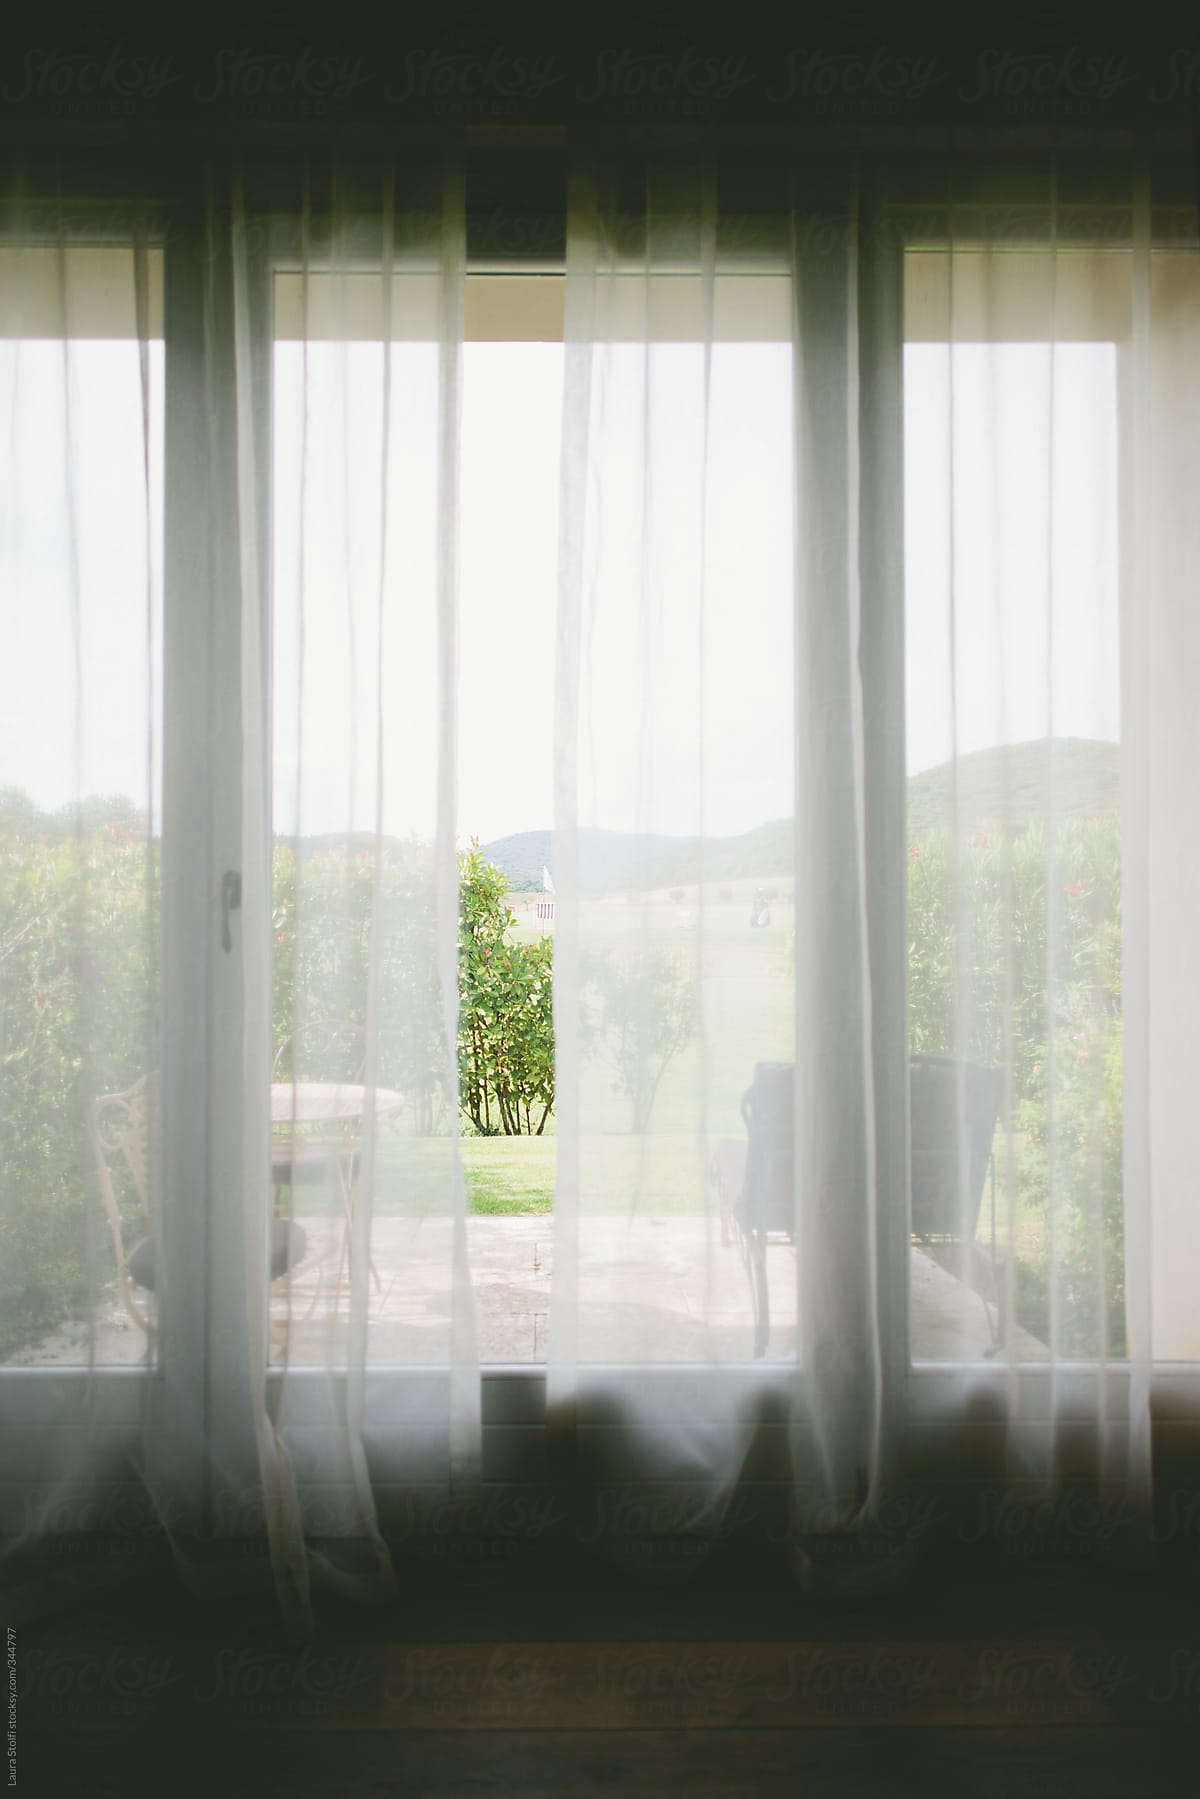 Garden seen from the inside through linen curtains and glass door